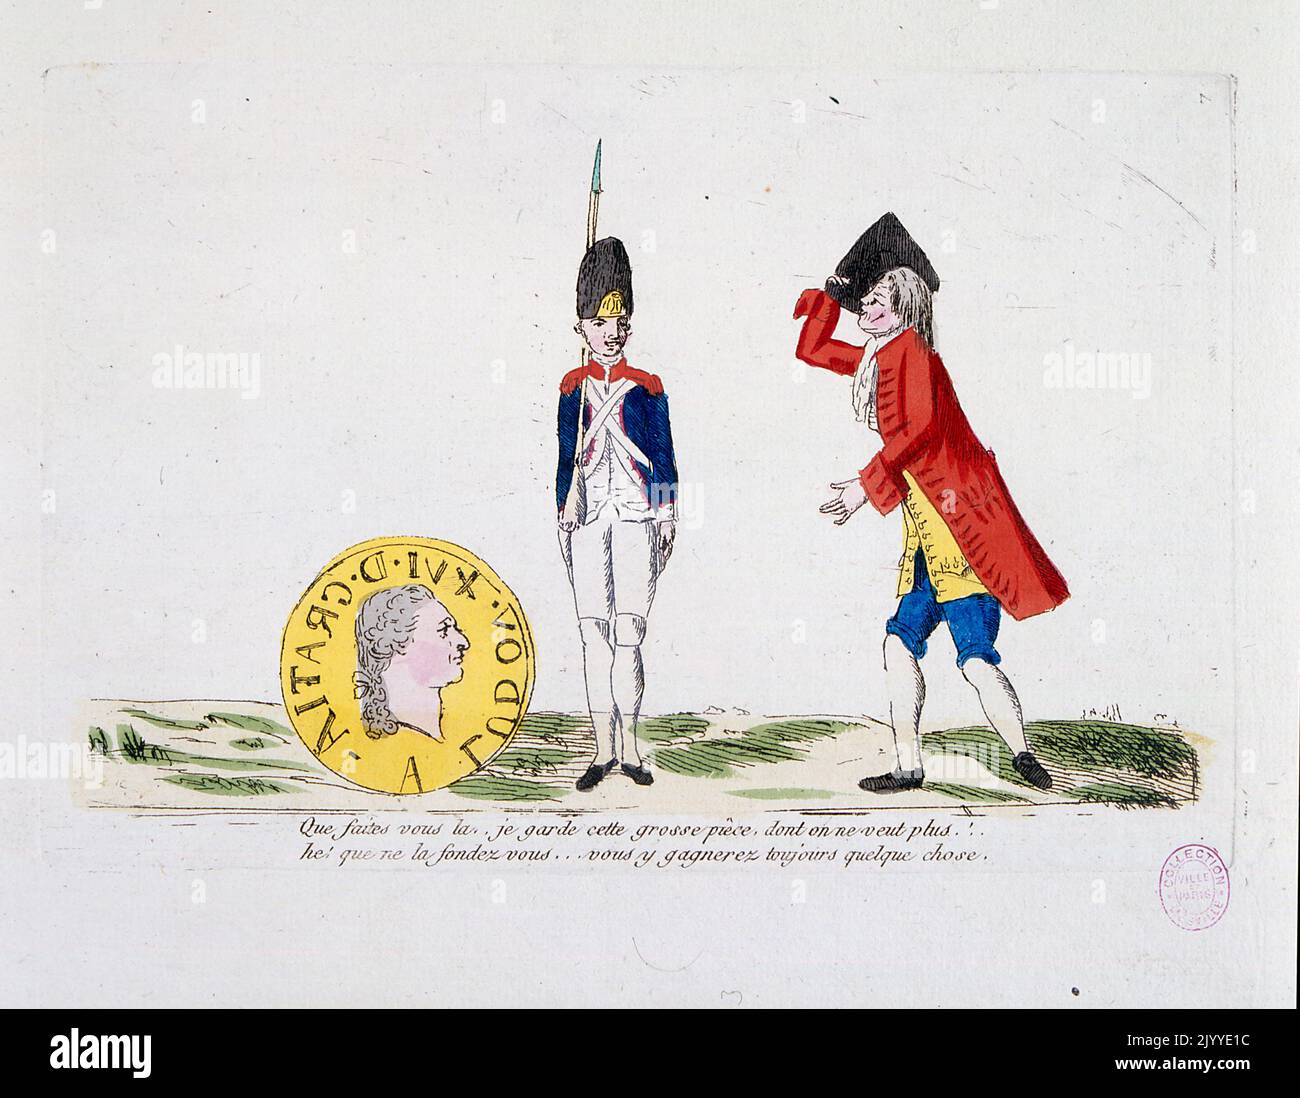 Illustration satirique illustrant un échange entre une garde et un aristocrate. Banque D'Images